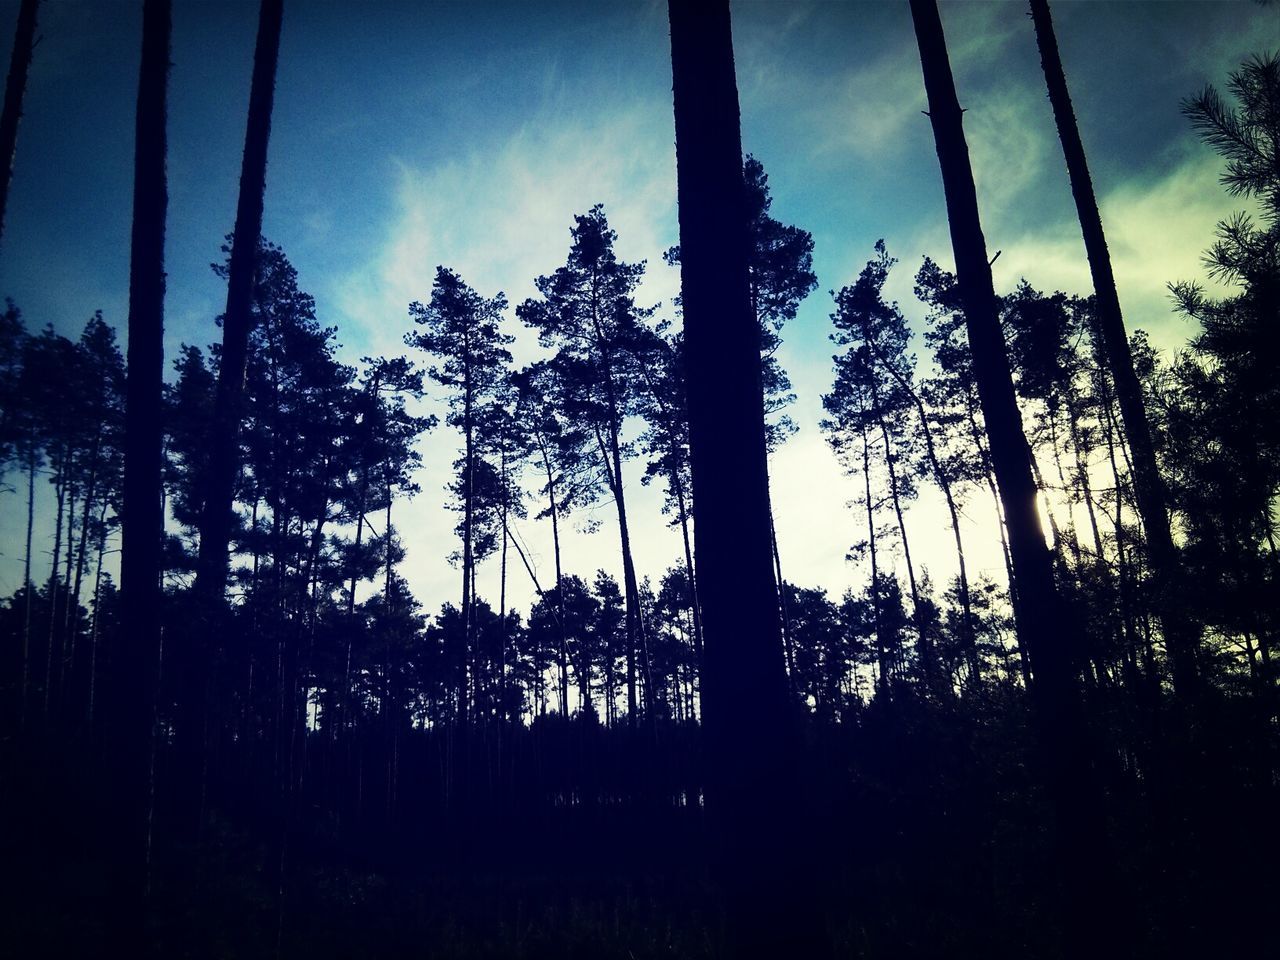 The dark forest